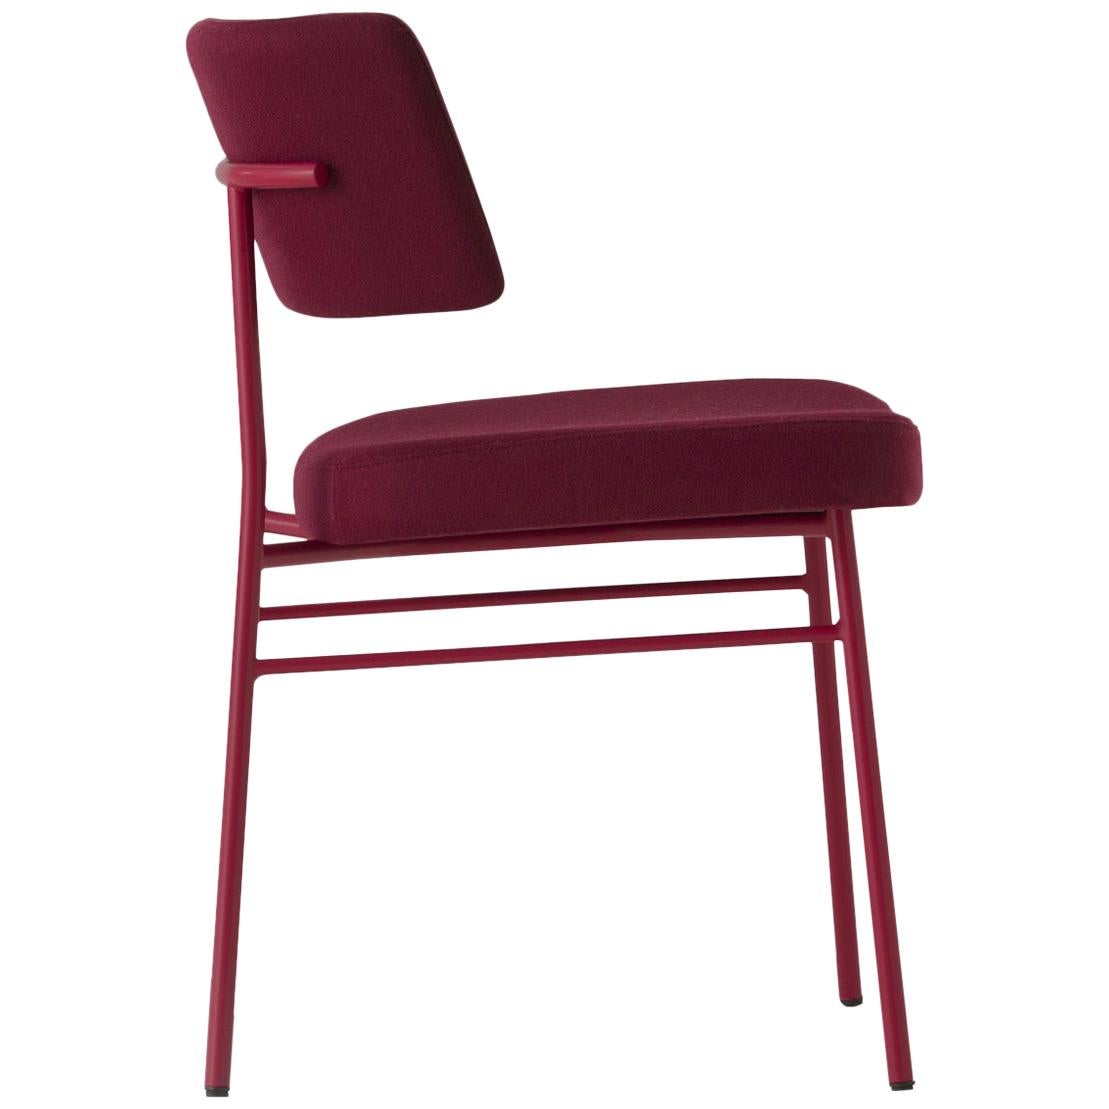 Chaise Marlen rouge, intérieur, chaise, fabriquée en Italie, maison, contrat